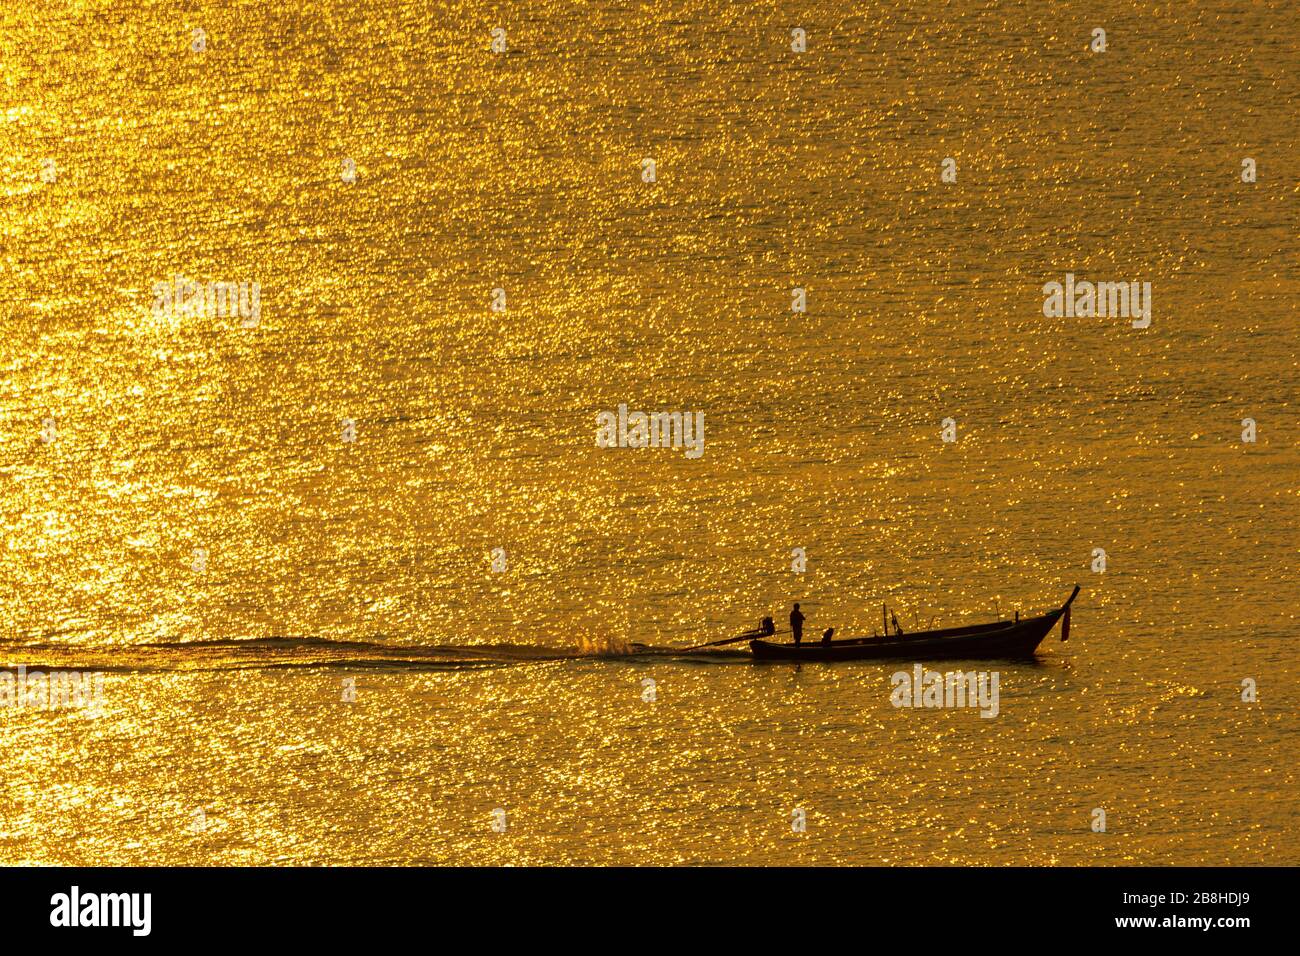 Der Sonnenuntergang, die Meeresoberfläche reflektiert das Sonnenlicht in Gold. Das Schiff lief durch die glitzernde Meeresoberfläche. Stockfoto